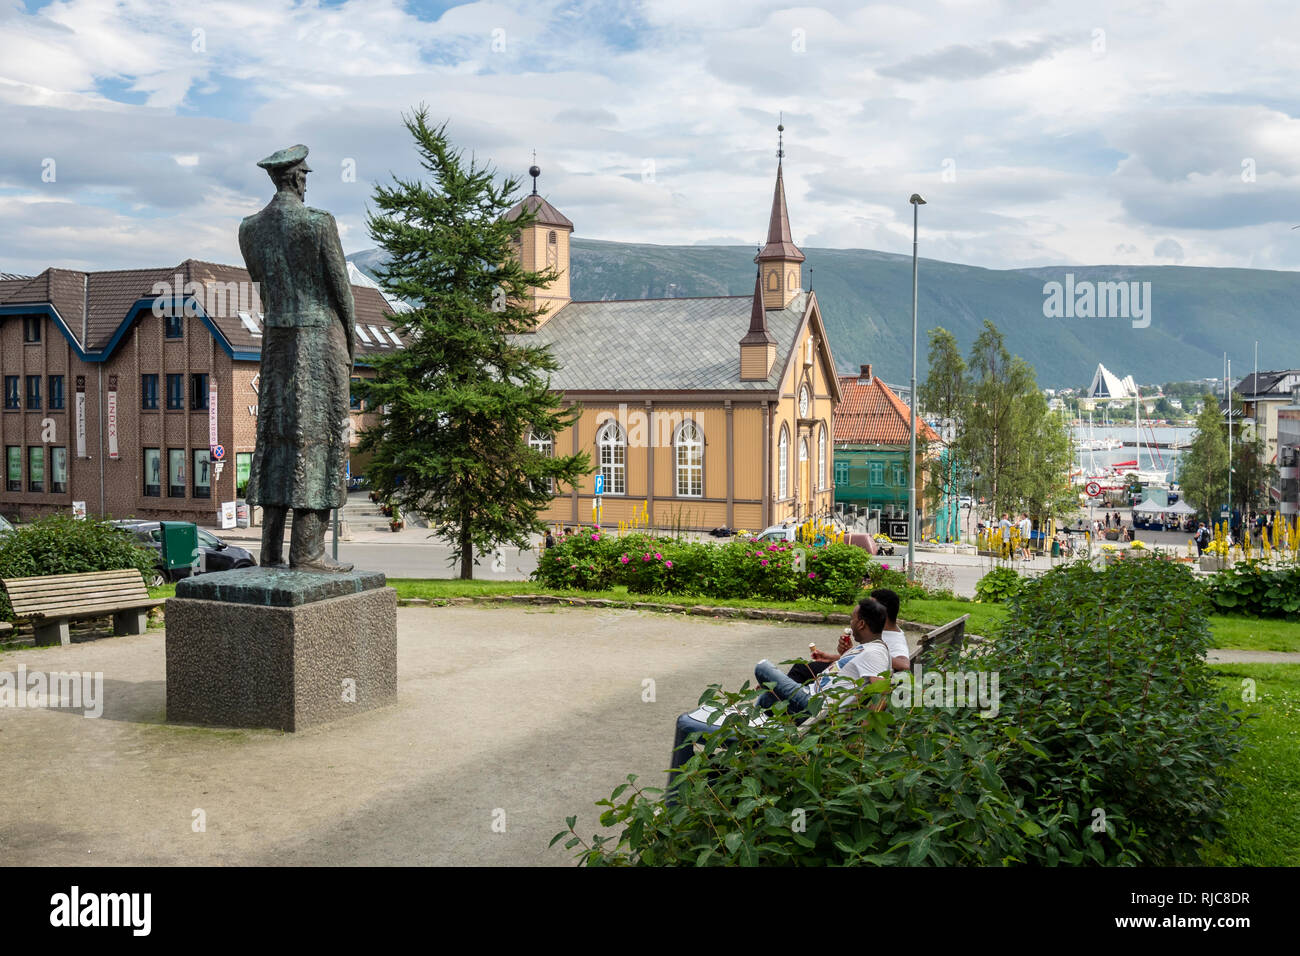 Le centre-ville de Tromsö, petit parc, l'Eglise catholique "Tromsö stift", vue de la cathédrale et du port de l'autre côté de la mer, Tromsö, la Norvège. Banque D'Images